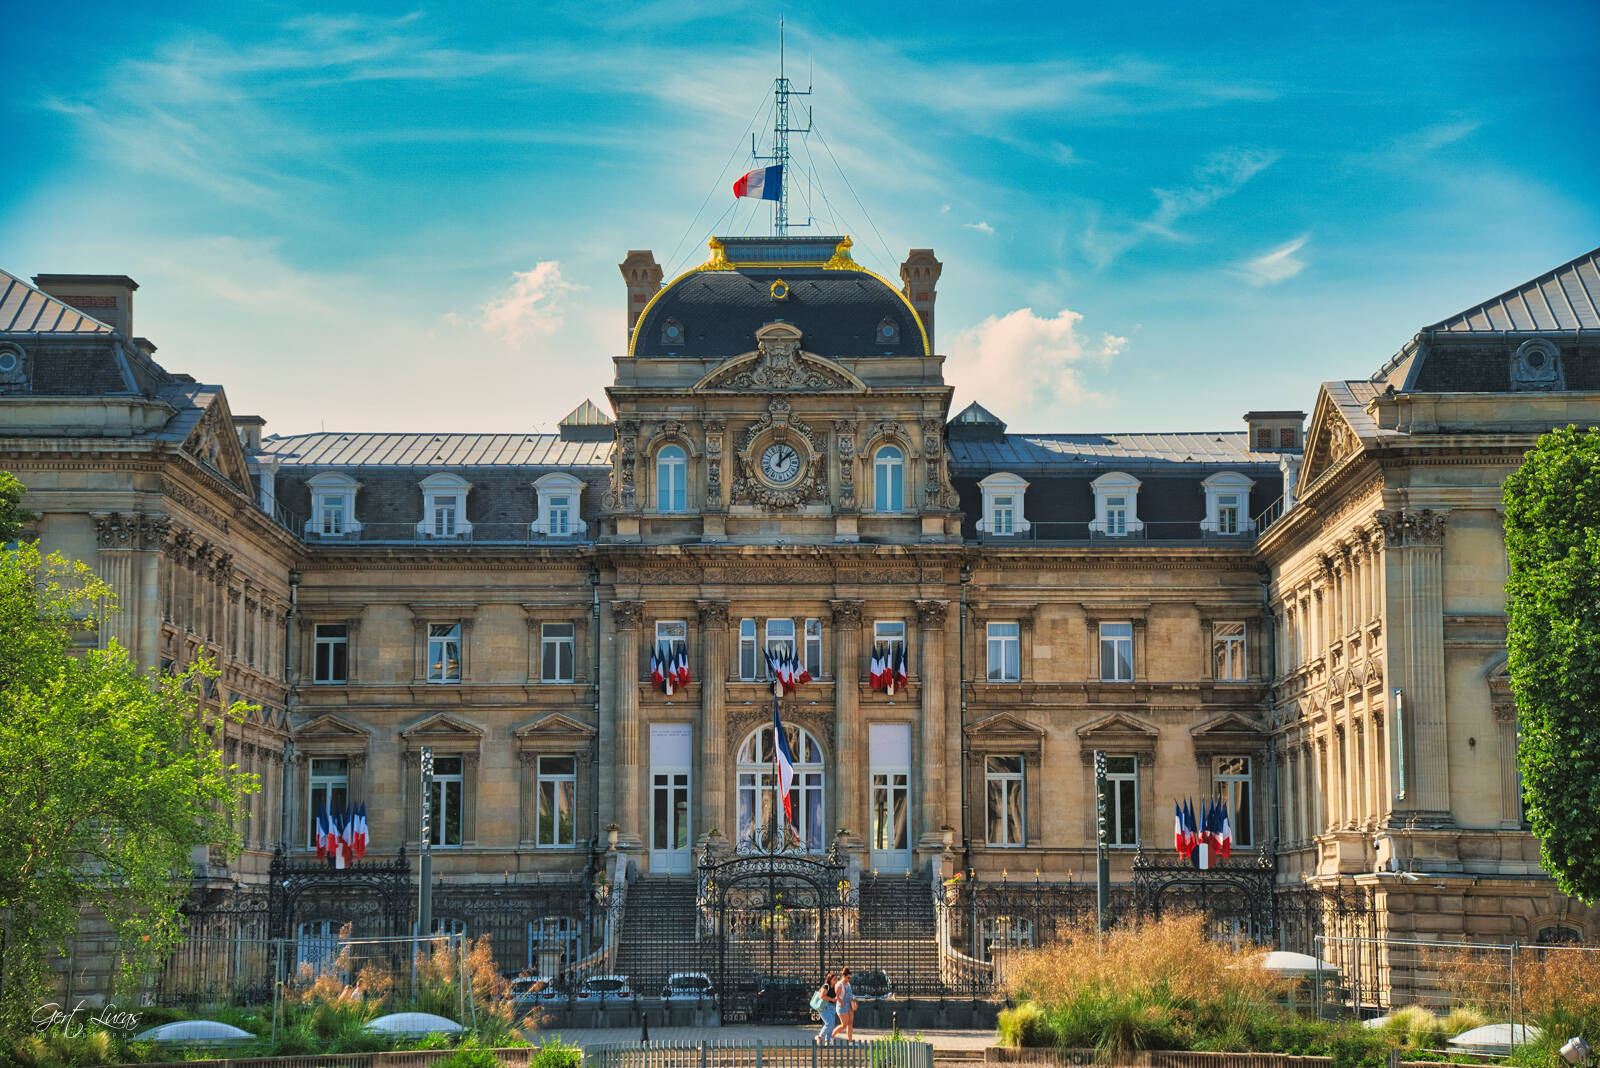 Image of Place de la République by Gert Lucas